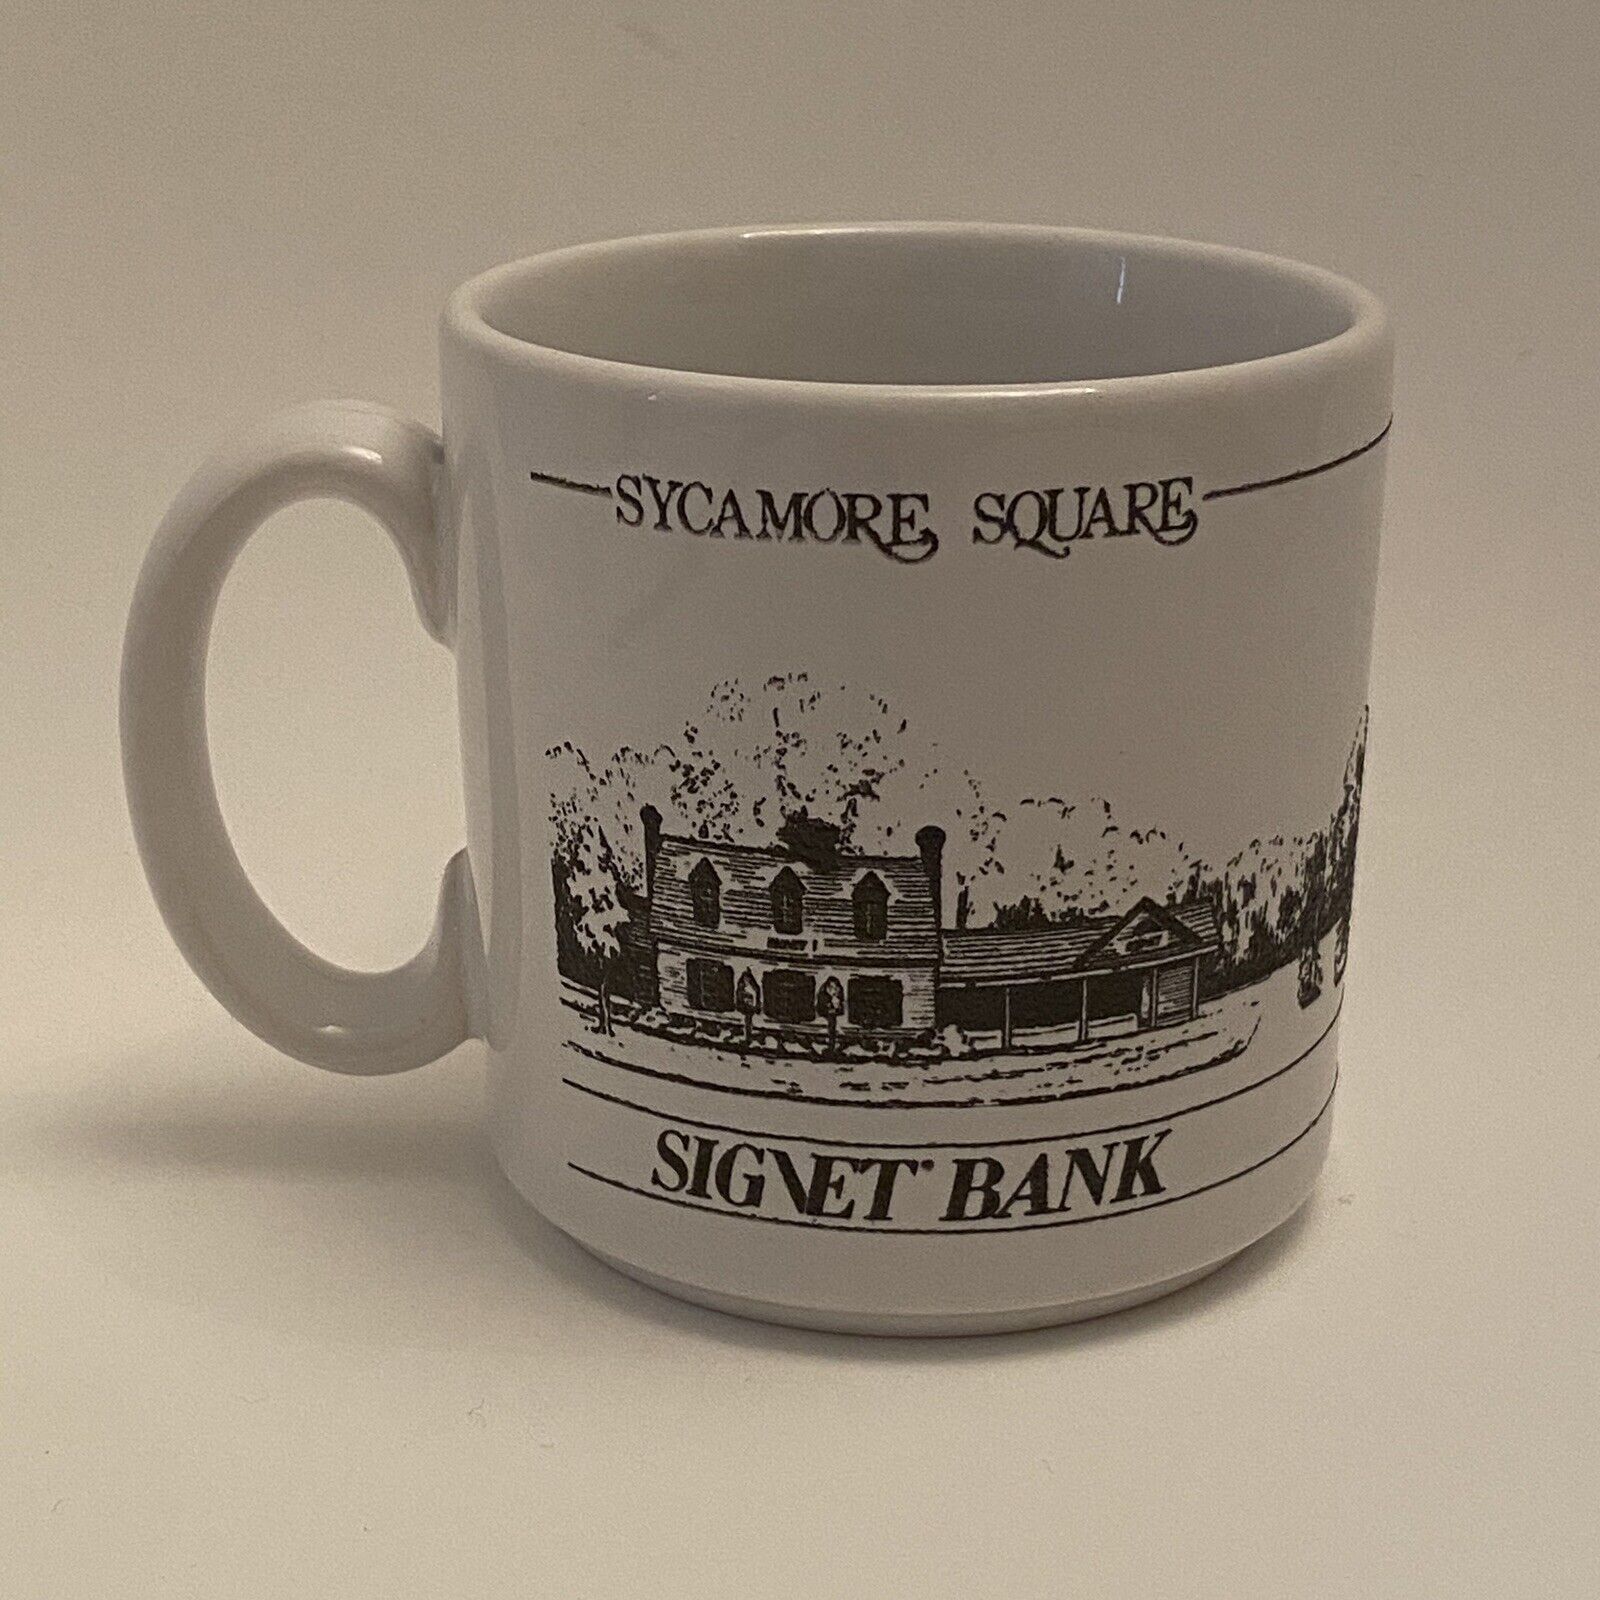 Signet Bank Coffee Mug Sycamore Square white Mug 12 OZ Stoneware England 